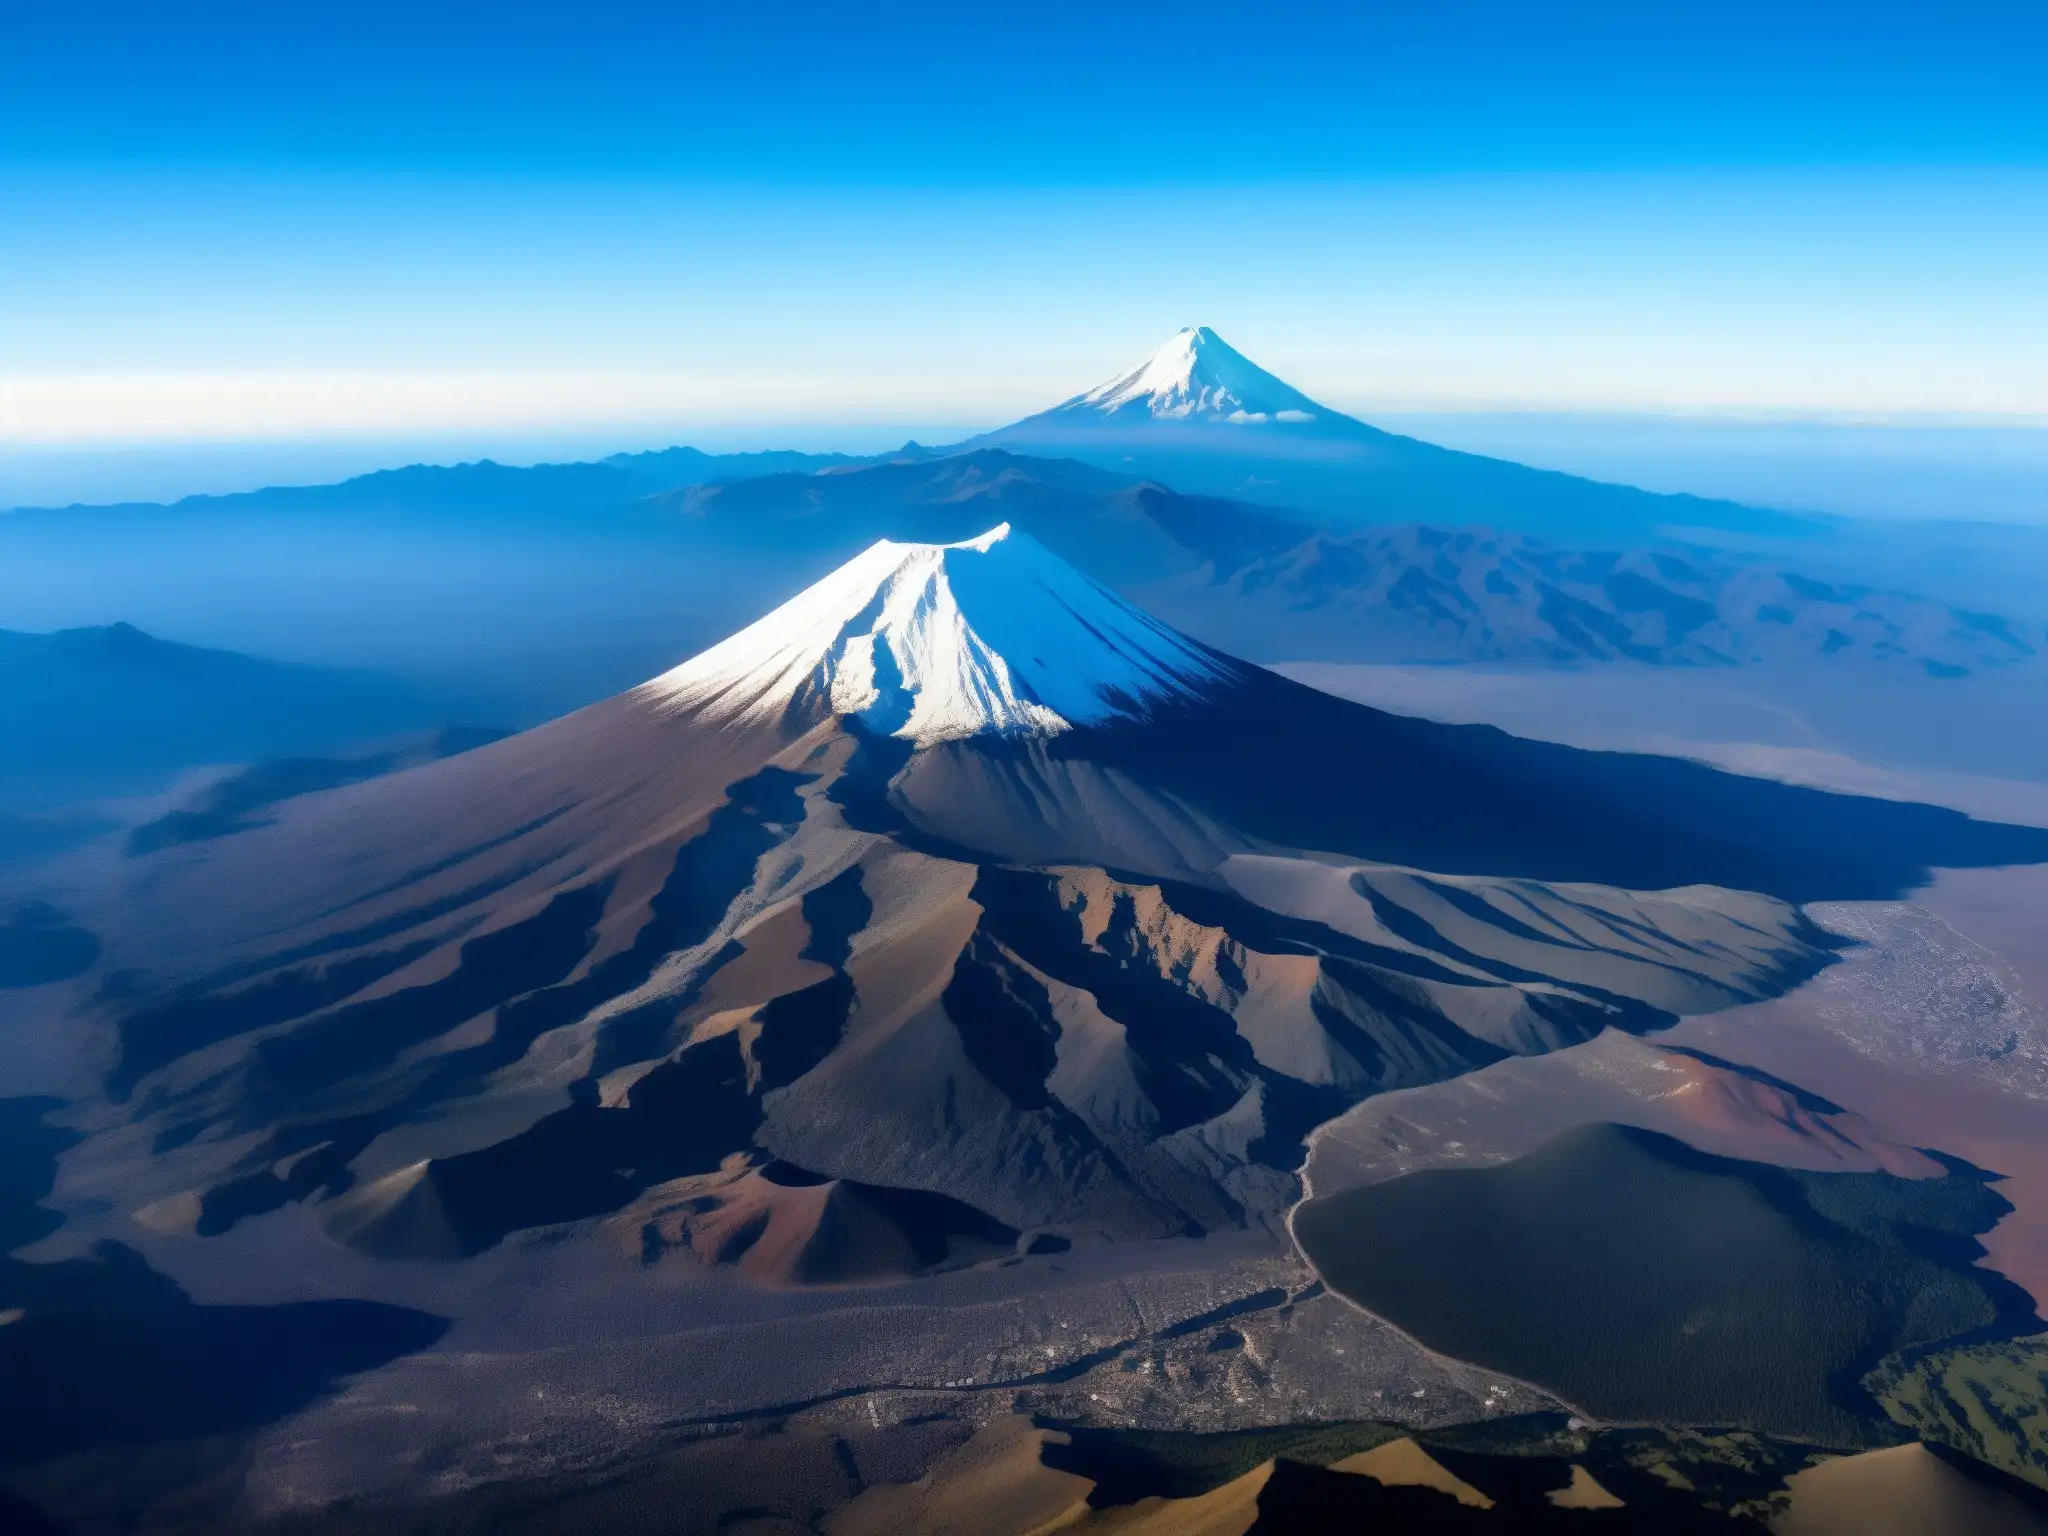 Imponentes volcanes Popocatépetl e Iztaccíhuatl, leyenda amorosa popocatépetl iztaccíhuatl, majestuosos picos nevados, contrastan con el cielo azul